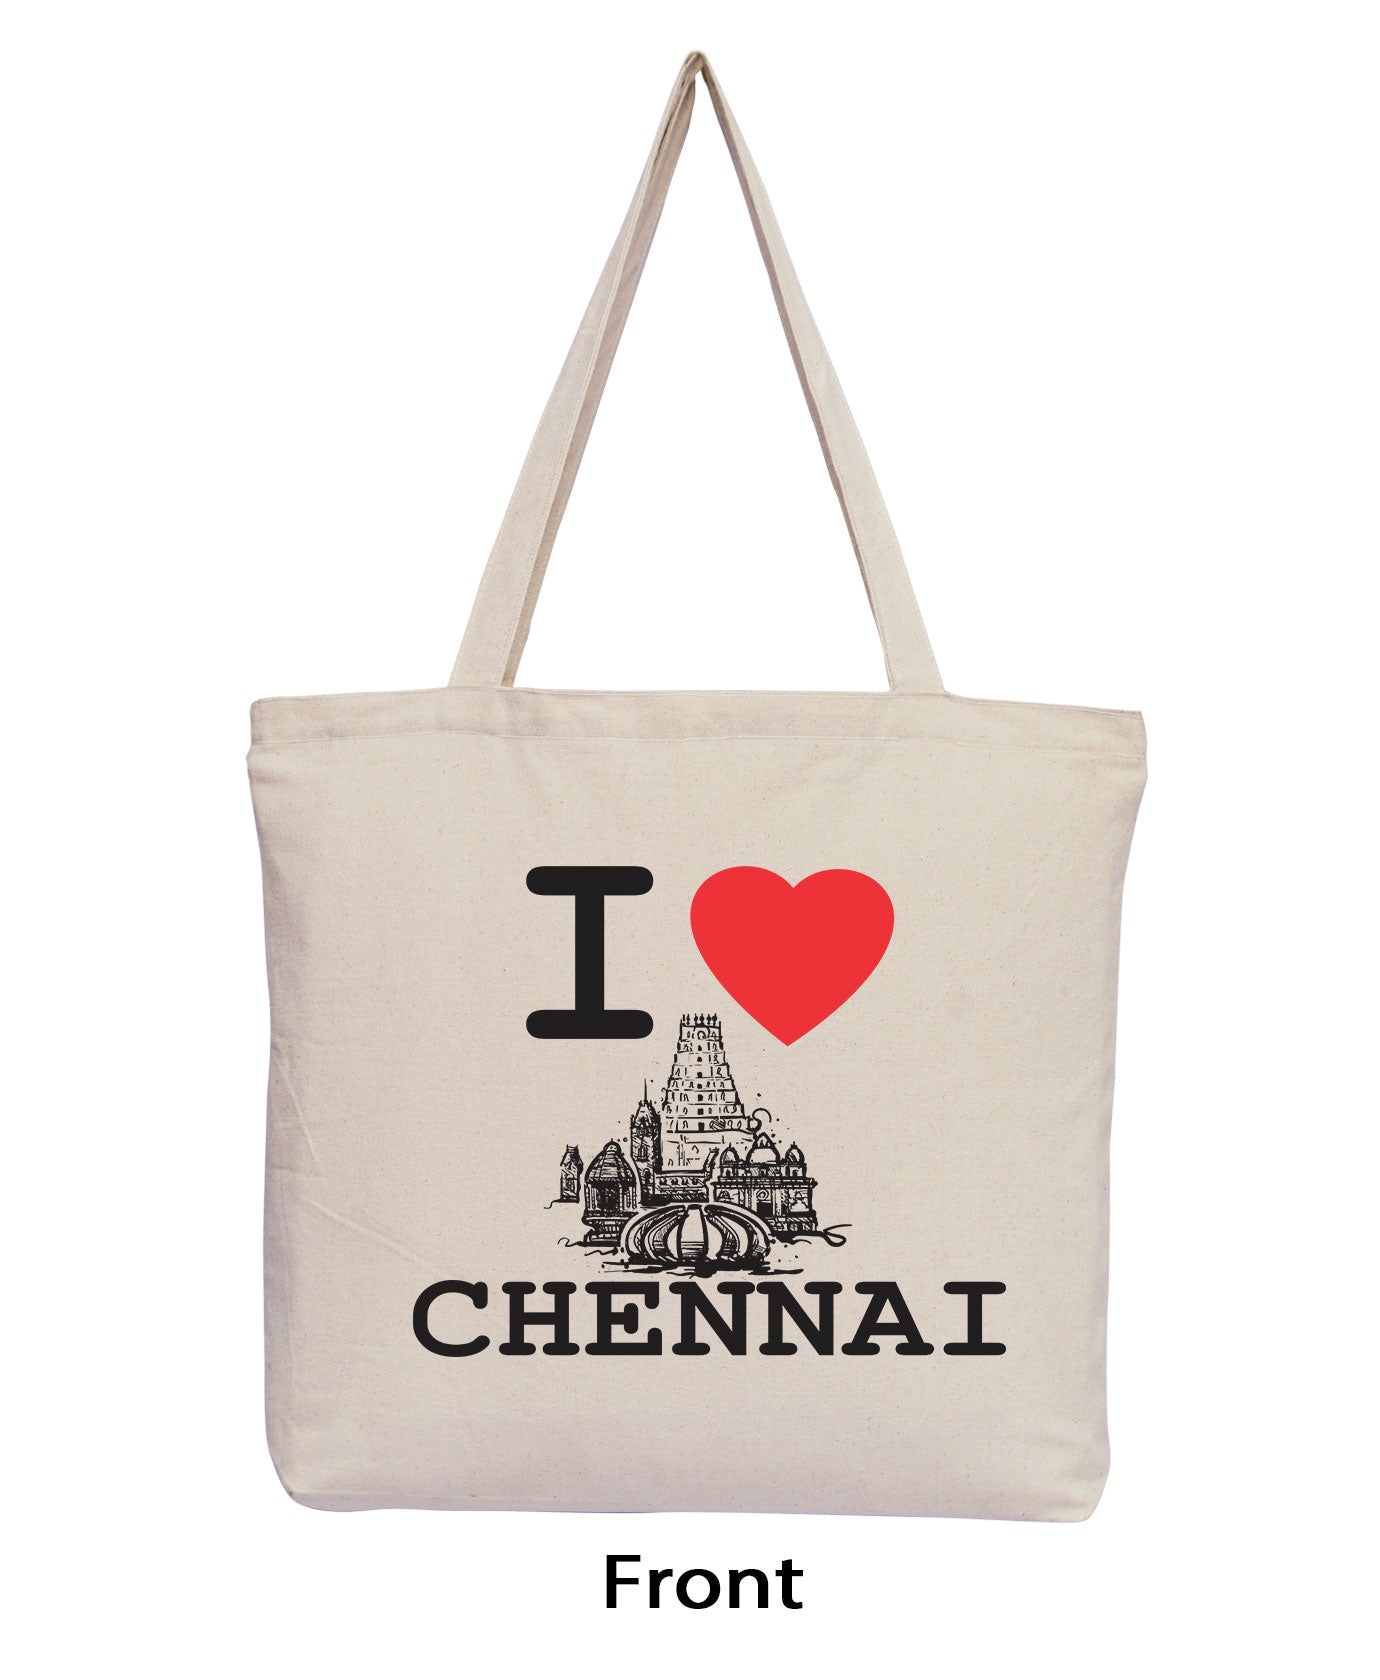 I Love Chennai - Natural Tote Bag